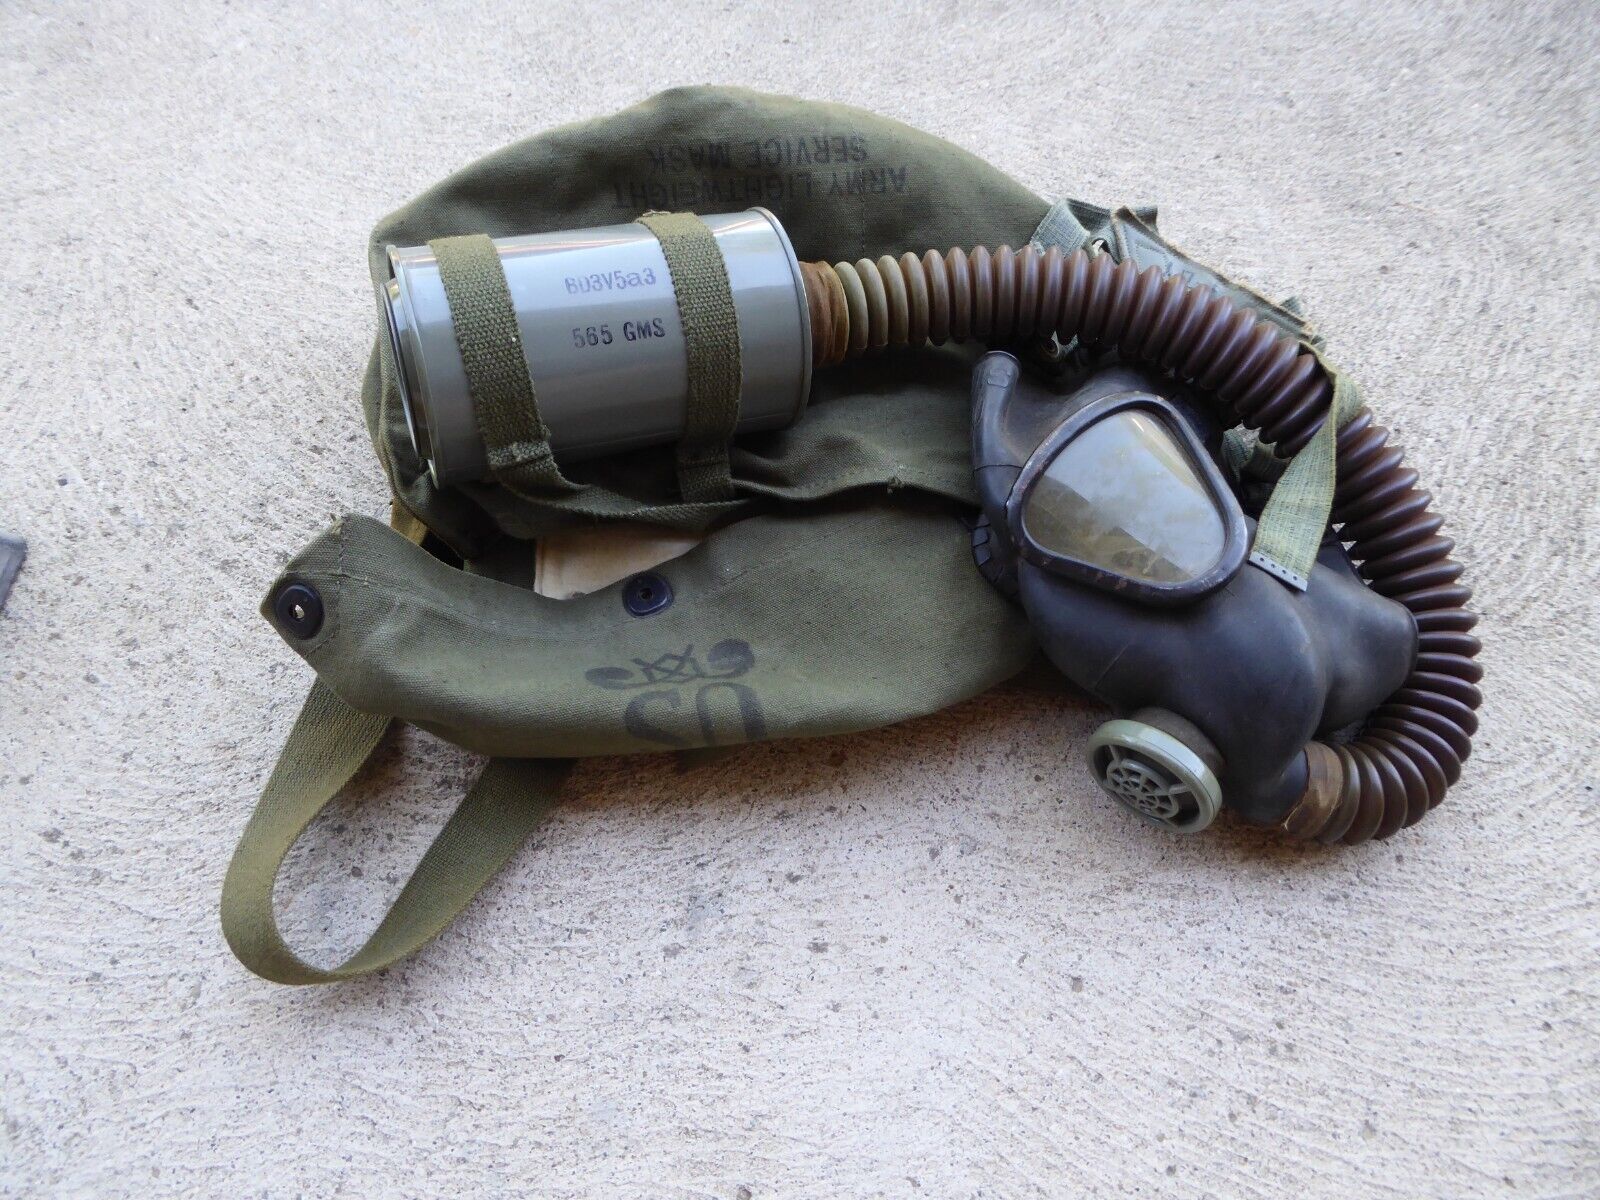 WWII / WW2 U.S. Army, Lightweight Service Gas Mask, M3 Dated 1944